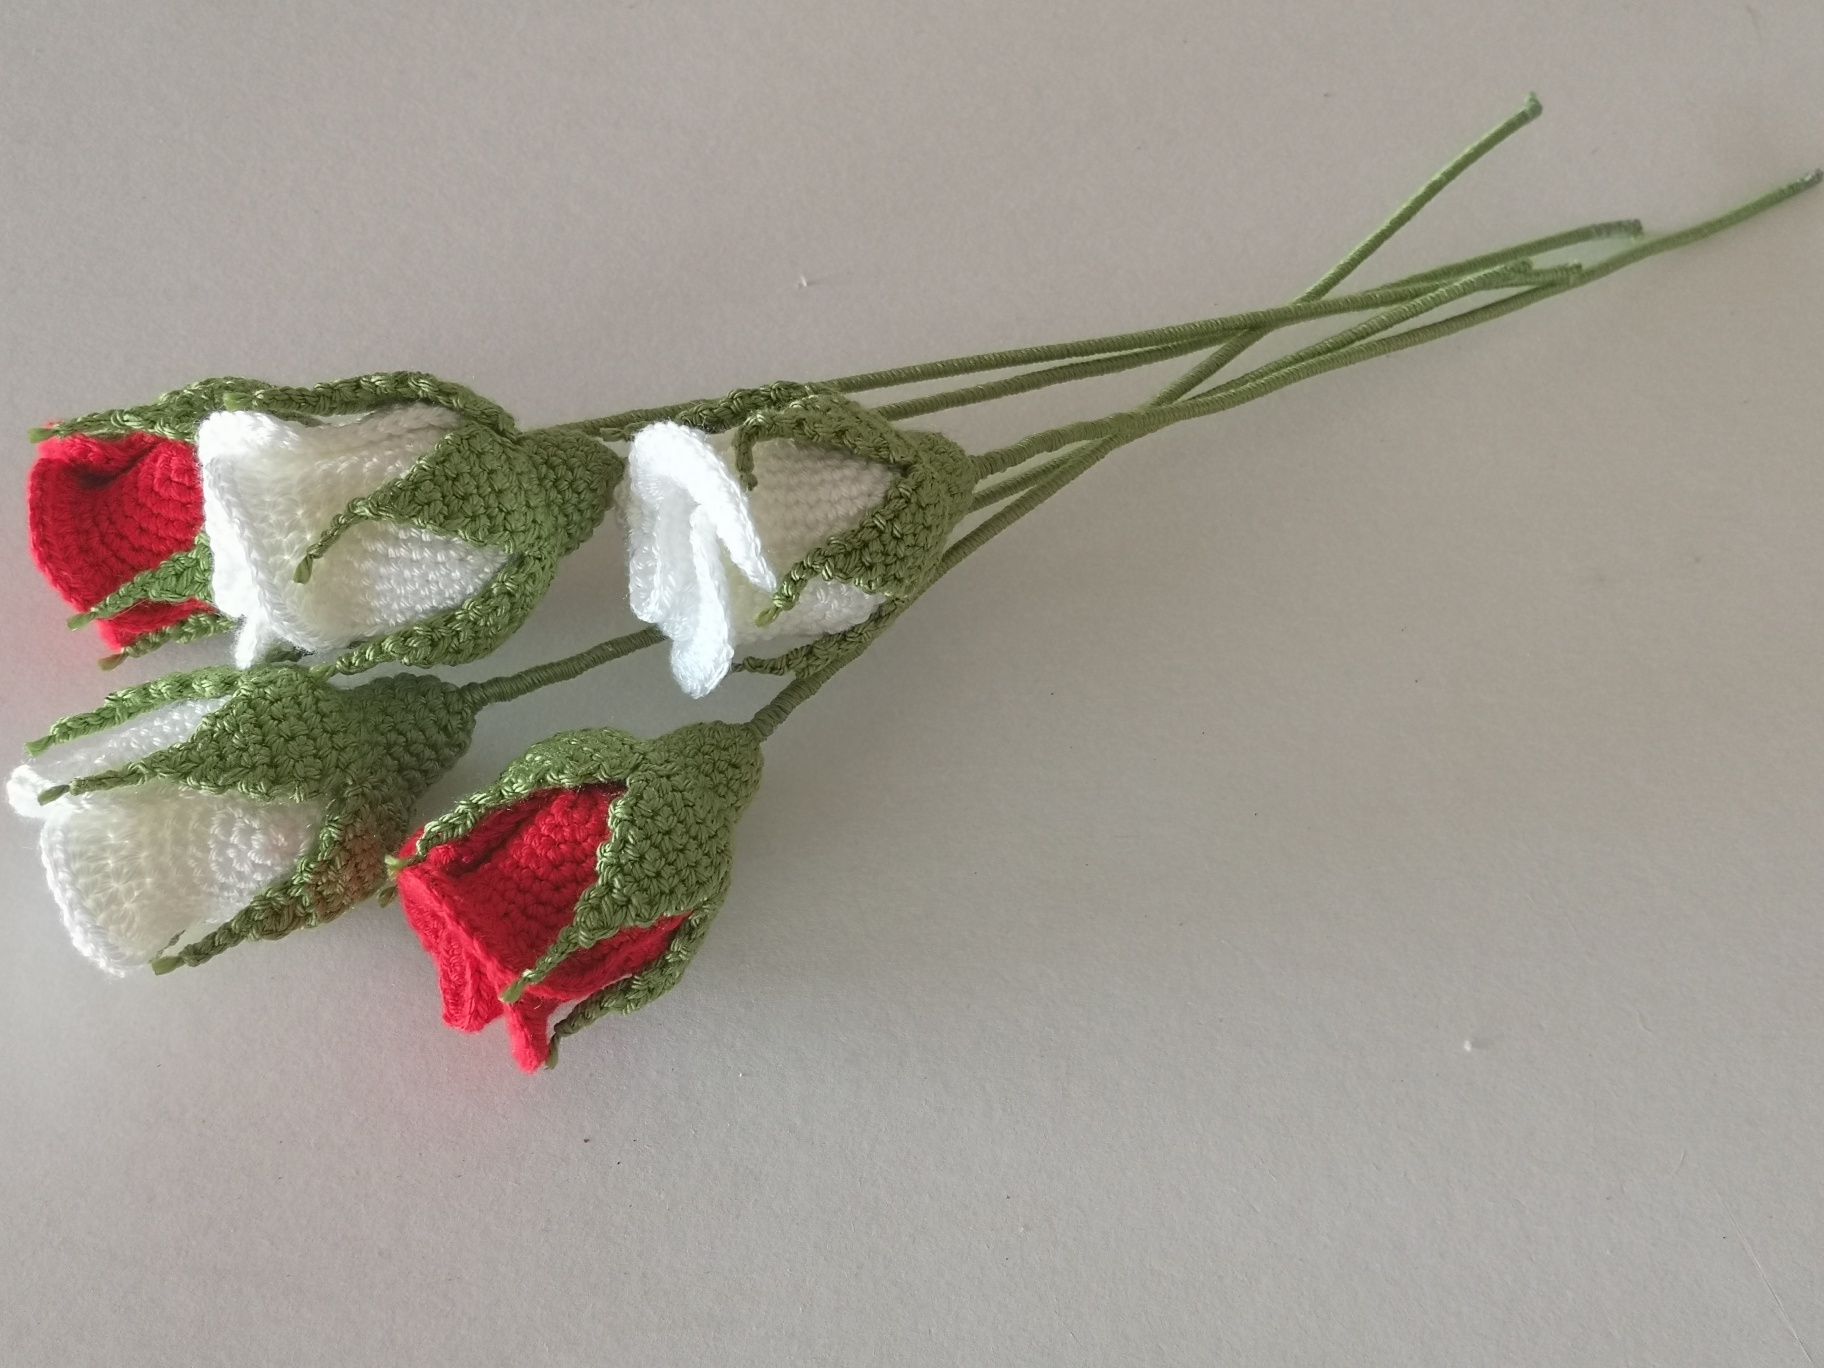 Rosas em crochet